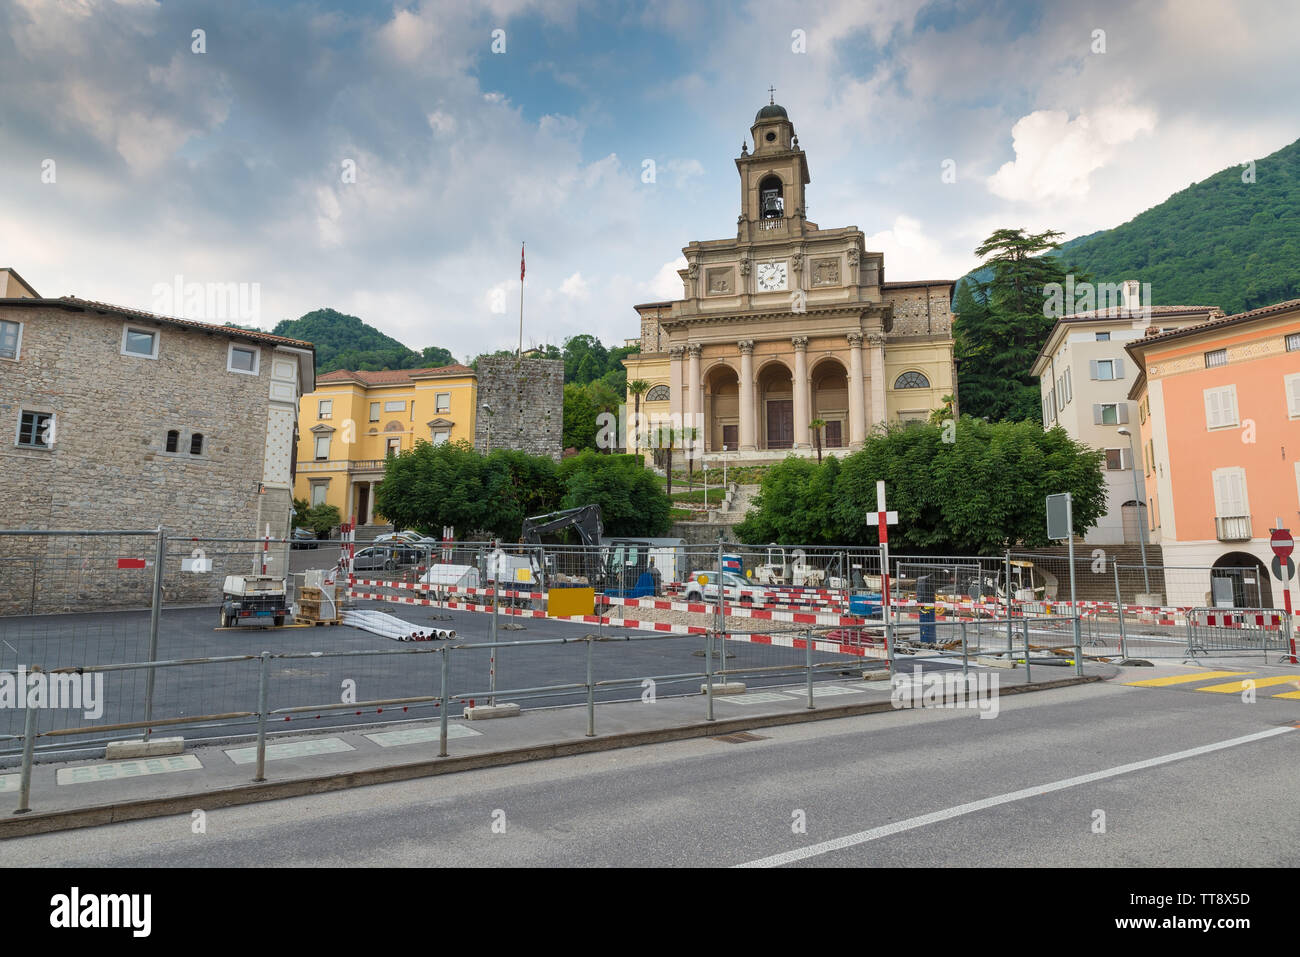 Travaux d'urbanisation dans le centre historique d'une ville Suisse, Lugano Banque D'Images